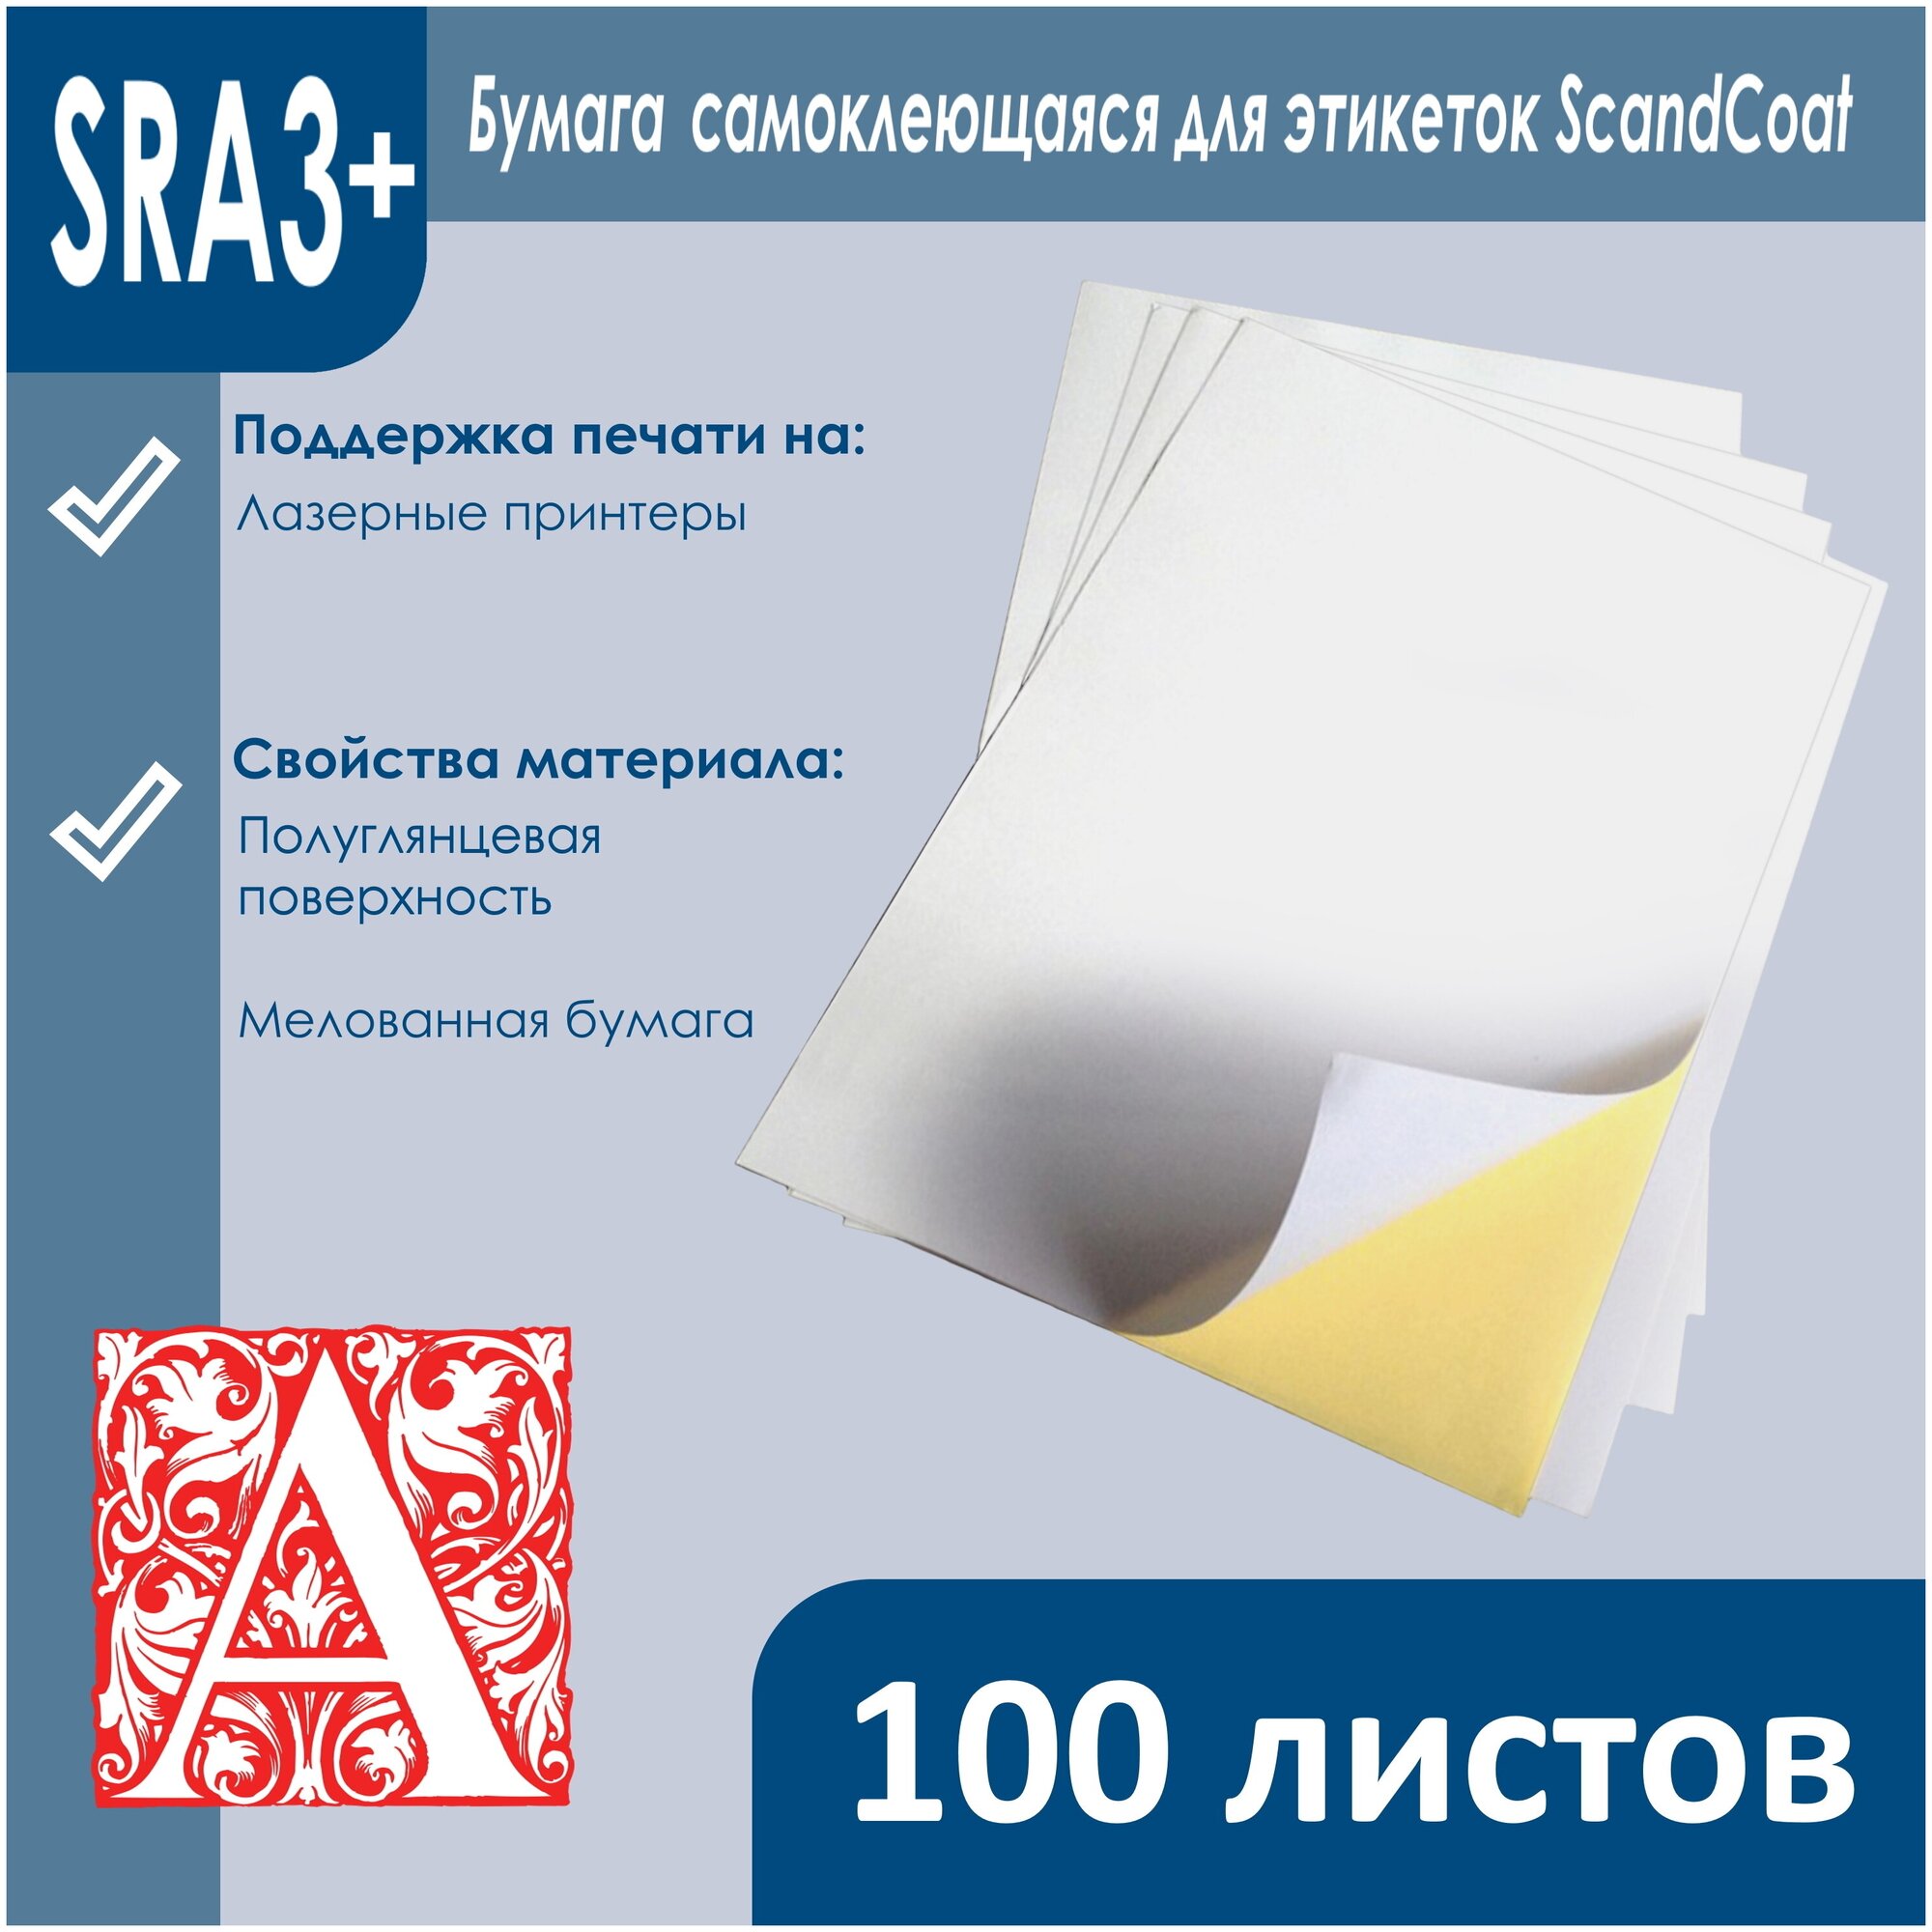 Бумага самоклеящаяся для этикеток ScandCoat, размер SRA3+, 100 листов